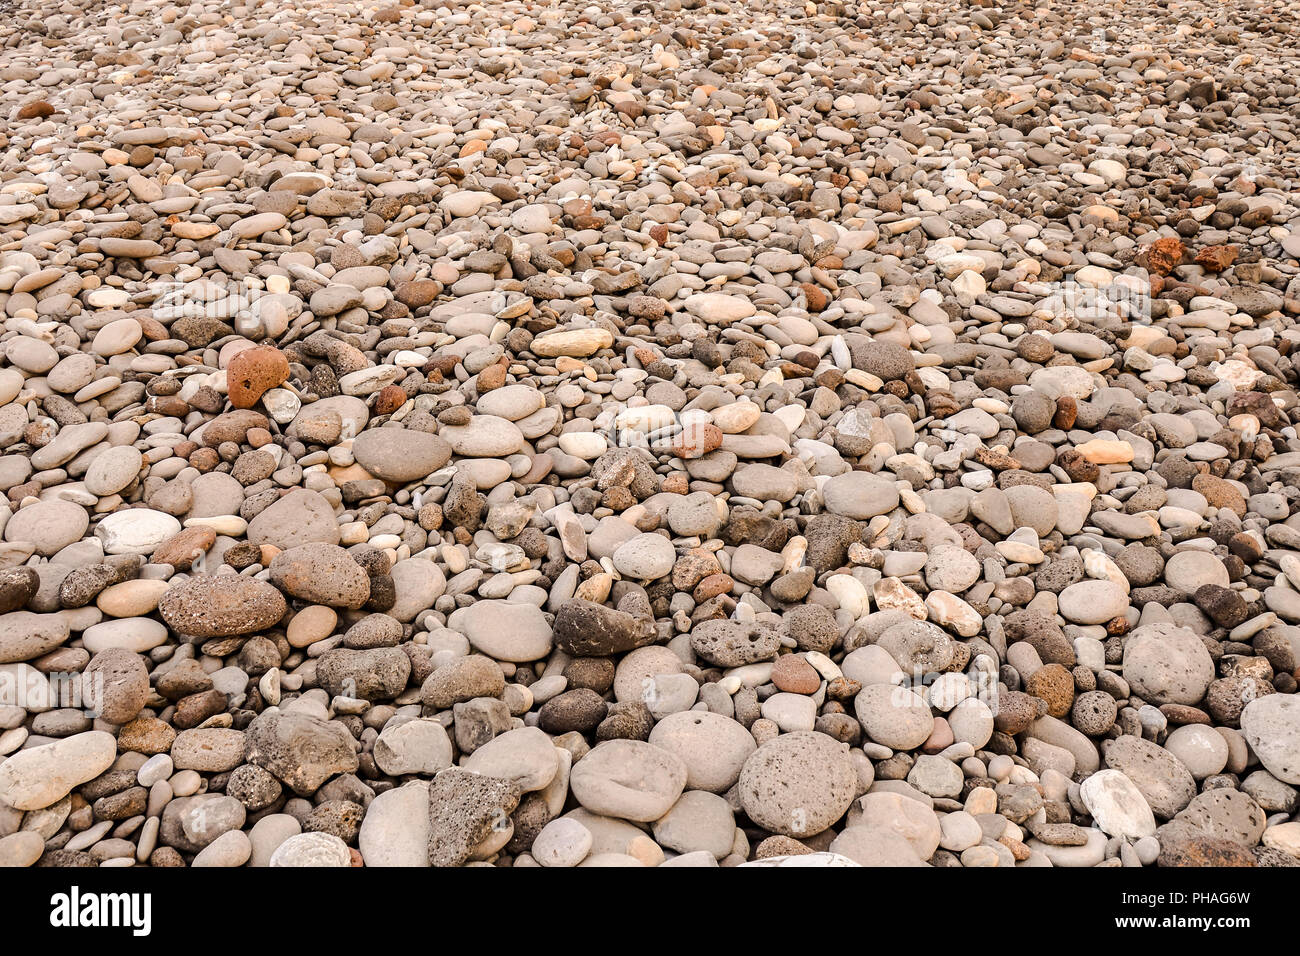 Dry round reeble stones Stock Photo